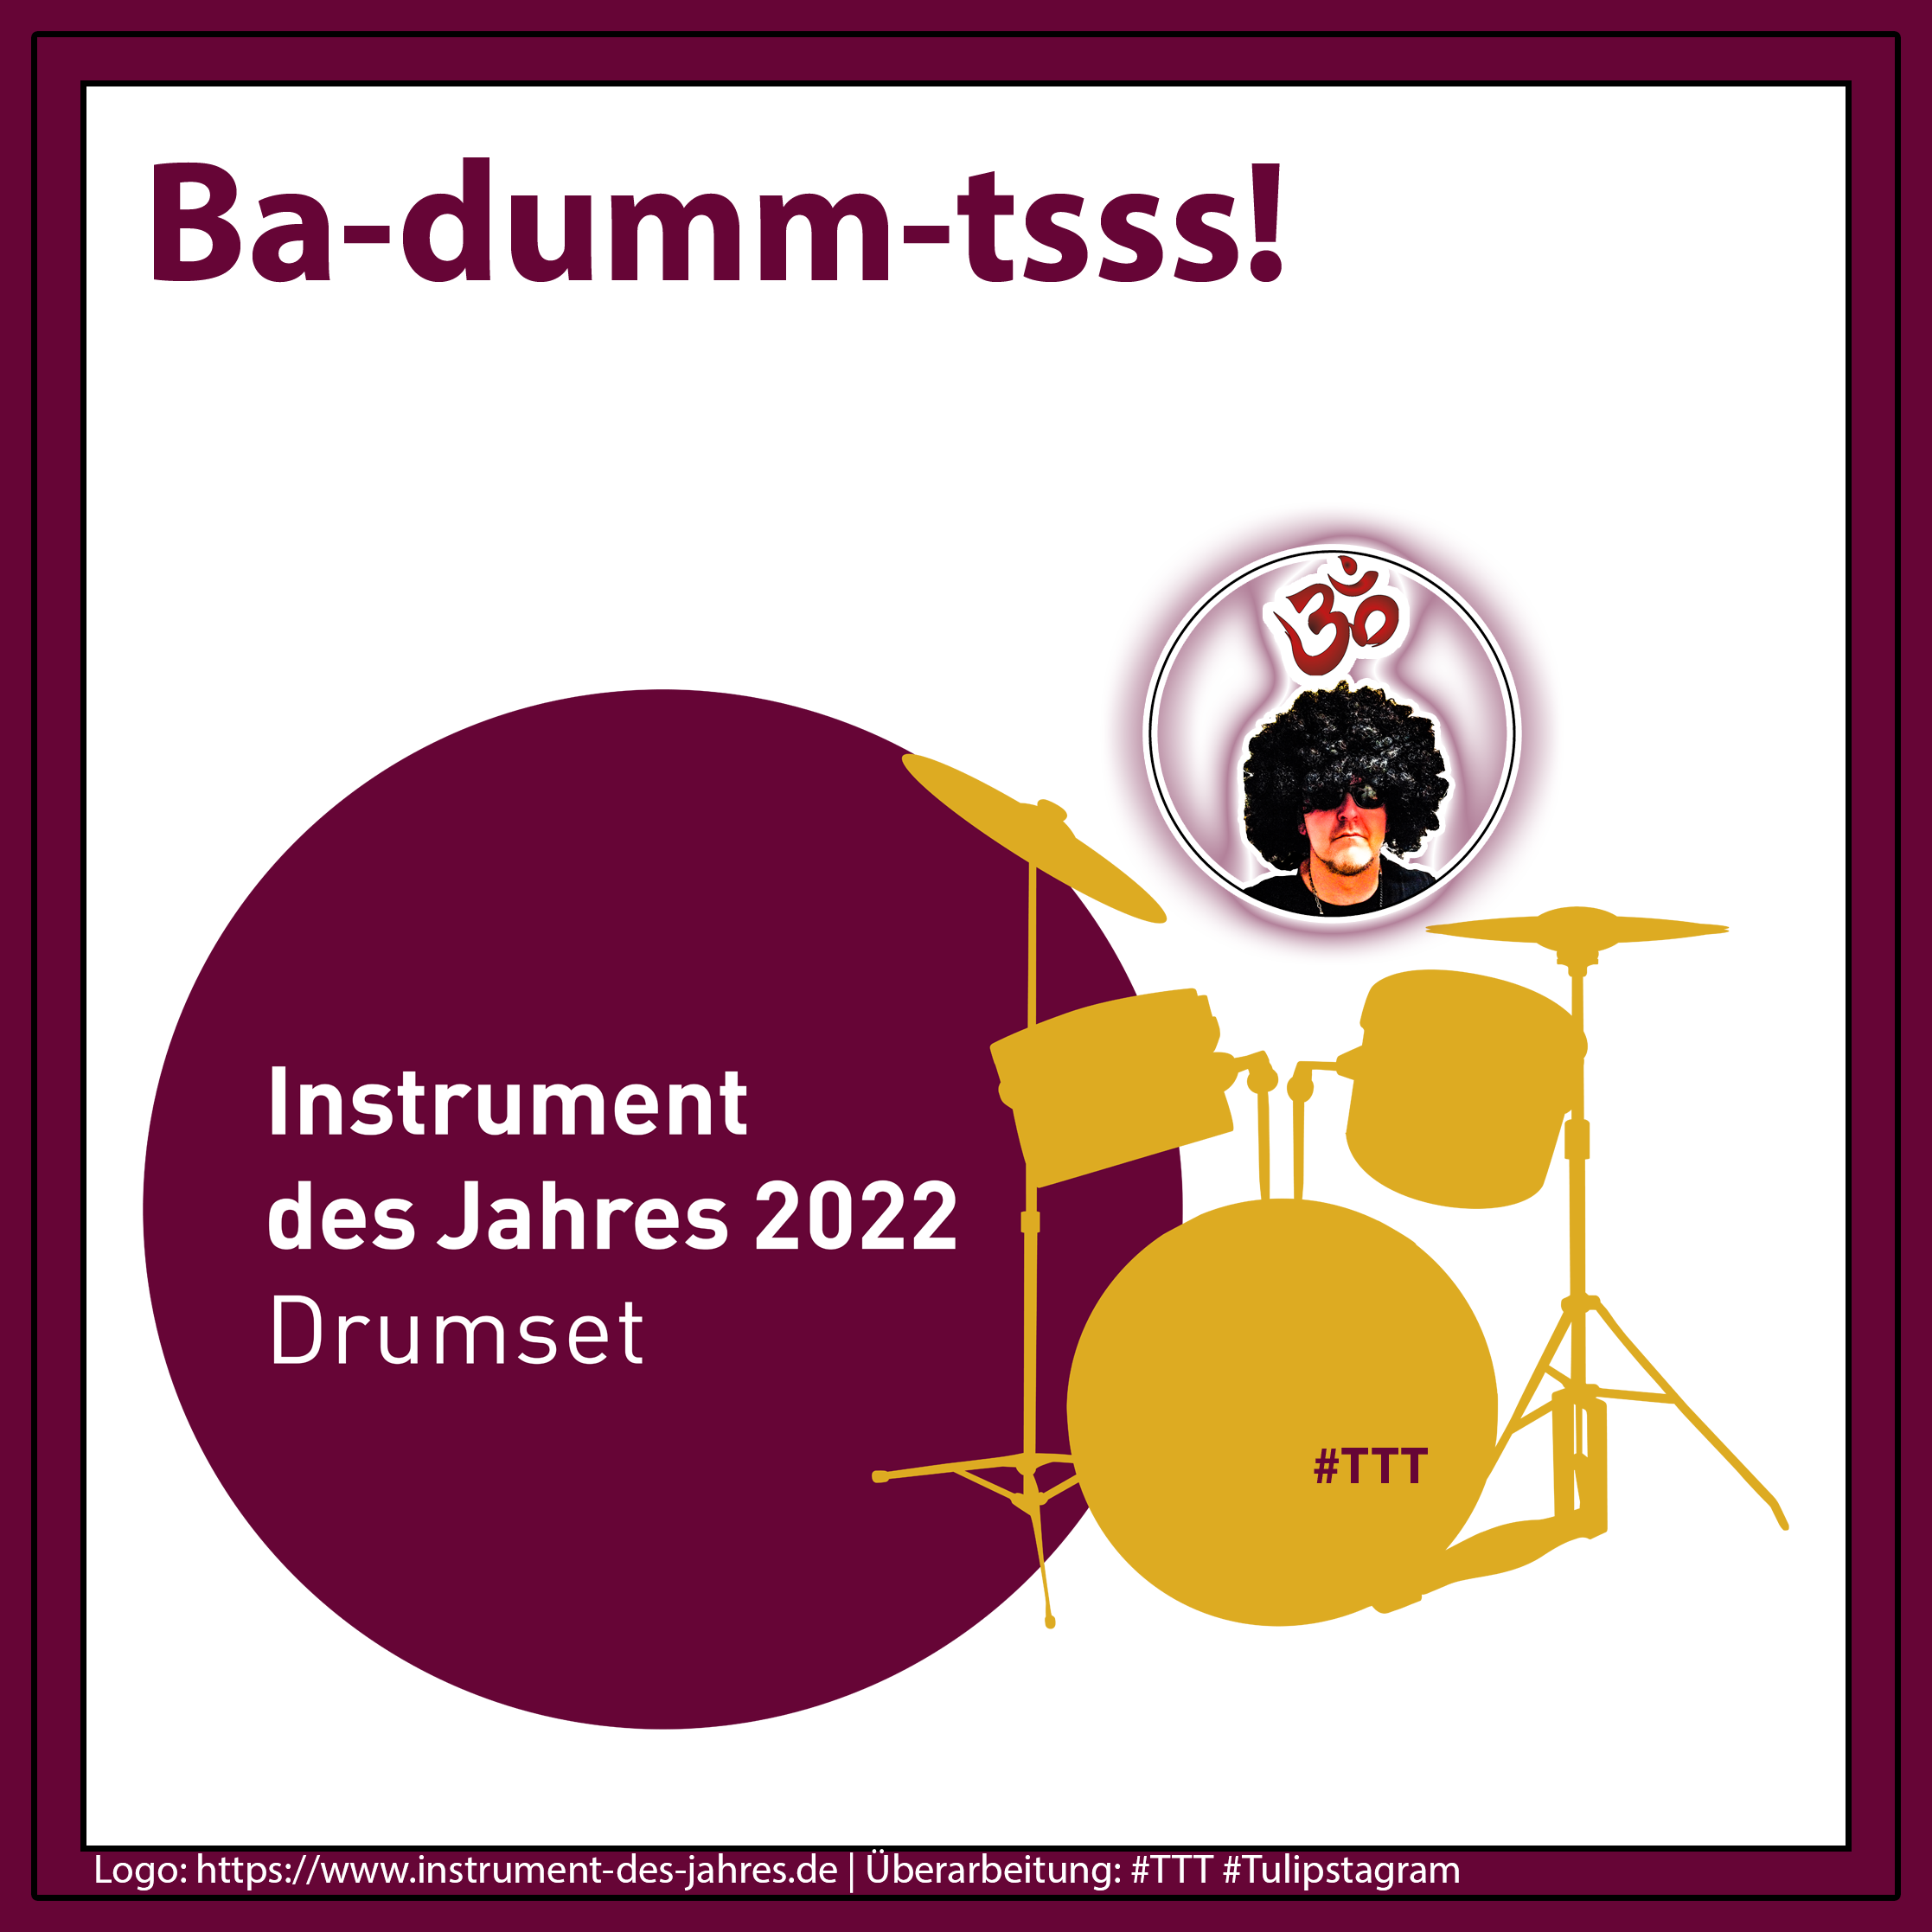 Ba-dumm-tsss! Instrument des Jahres 2022 Drumset | Log instrument-des-jahres.de | Überarbeitung: #TTT #Tulipstagram